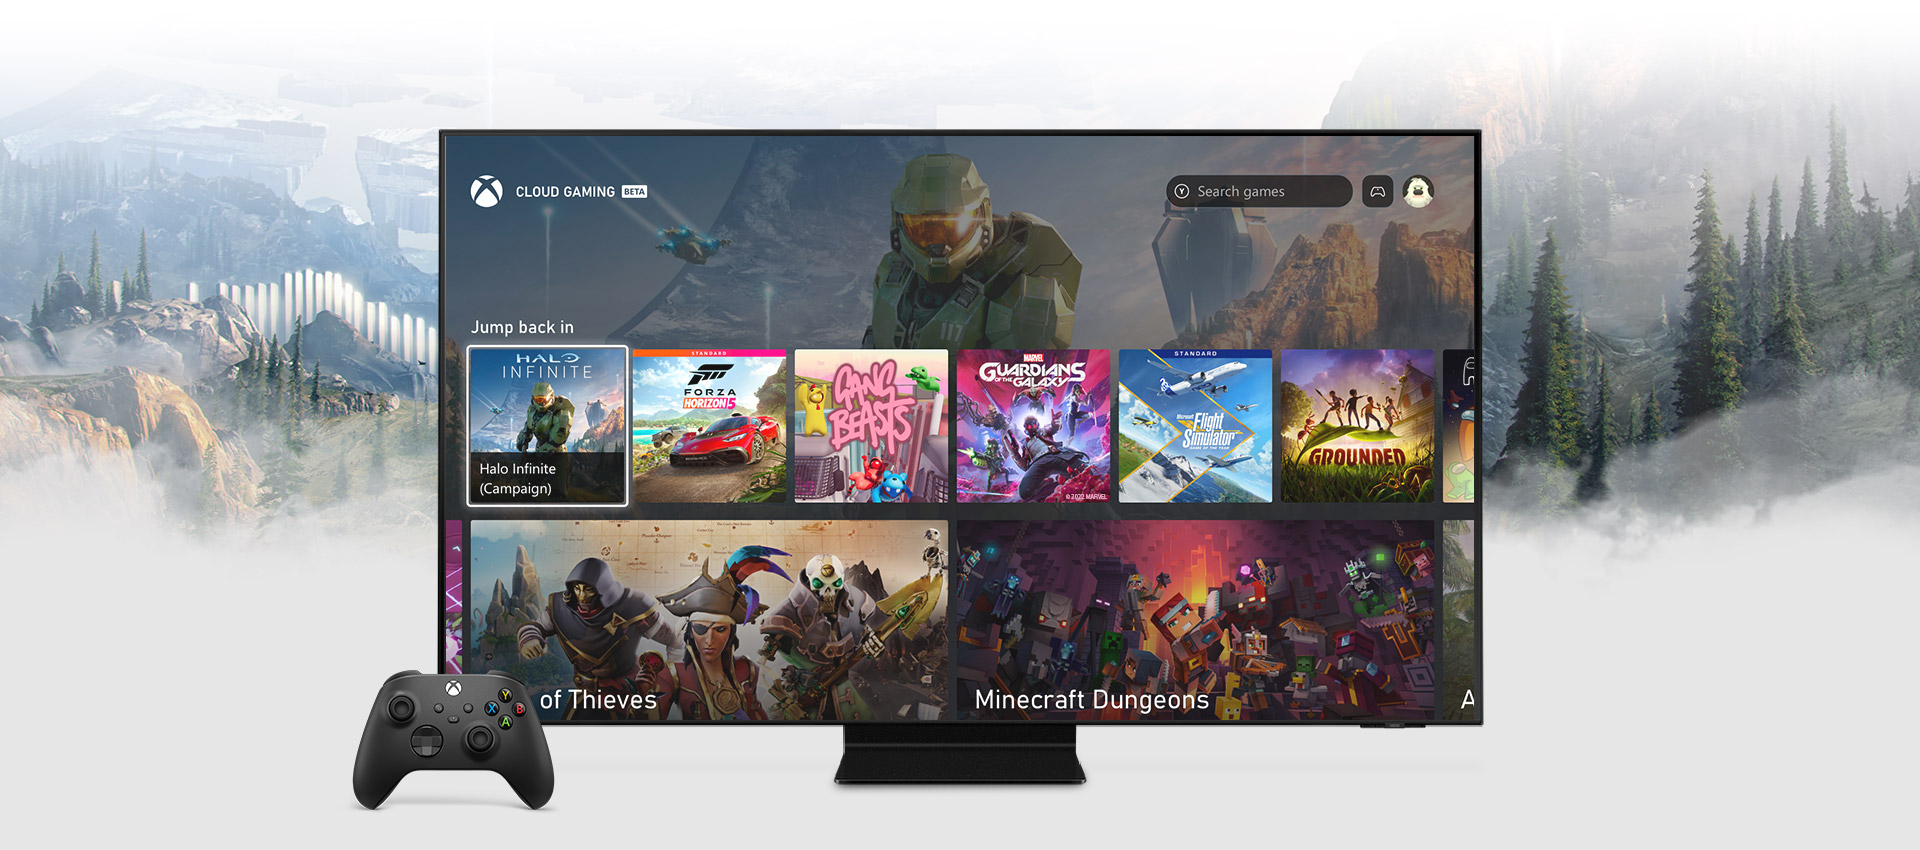 Tela Inicial do Aplicativo Xbox em uma smart TV da Samsung